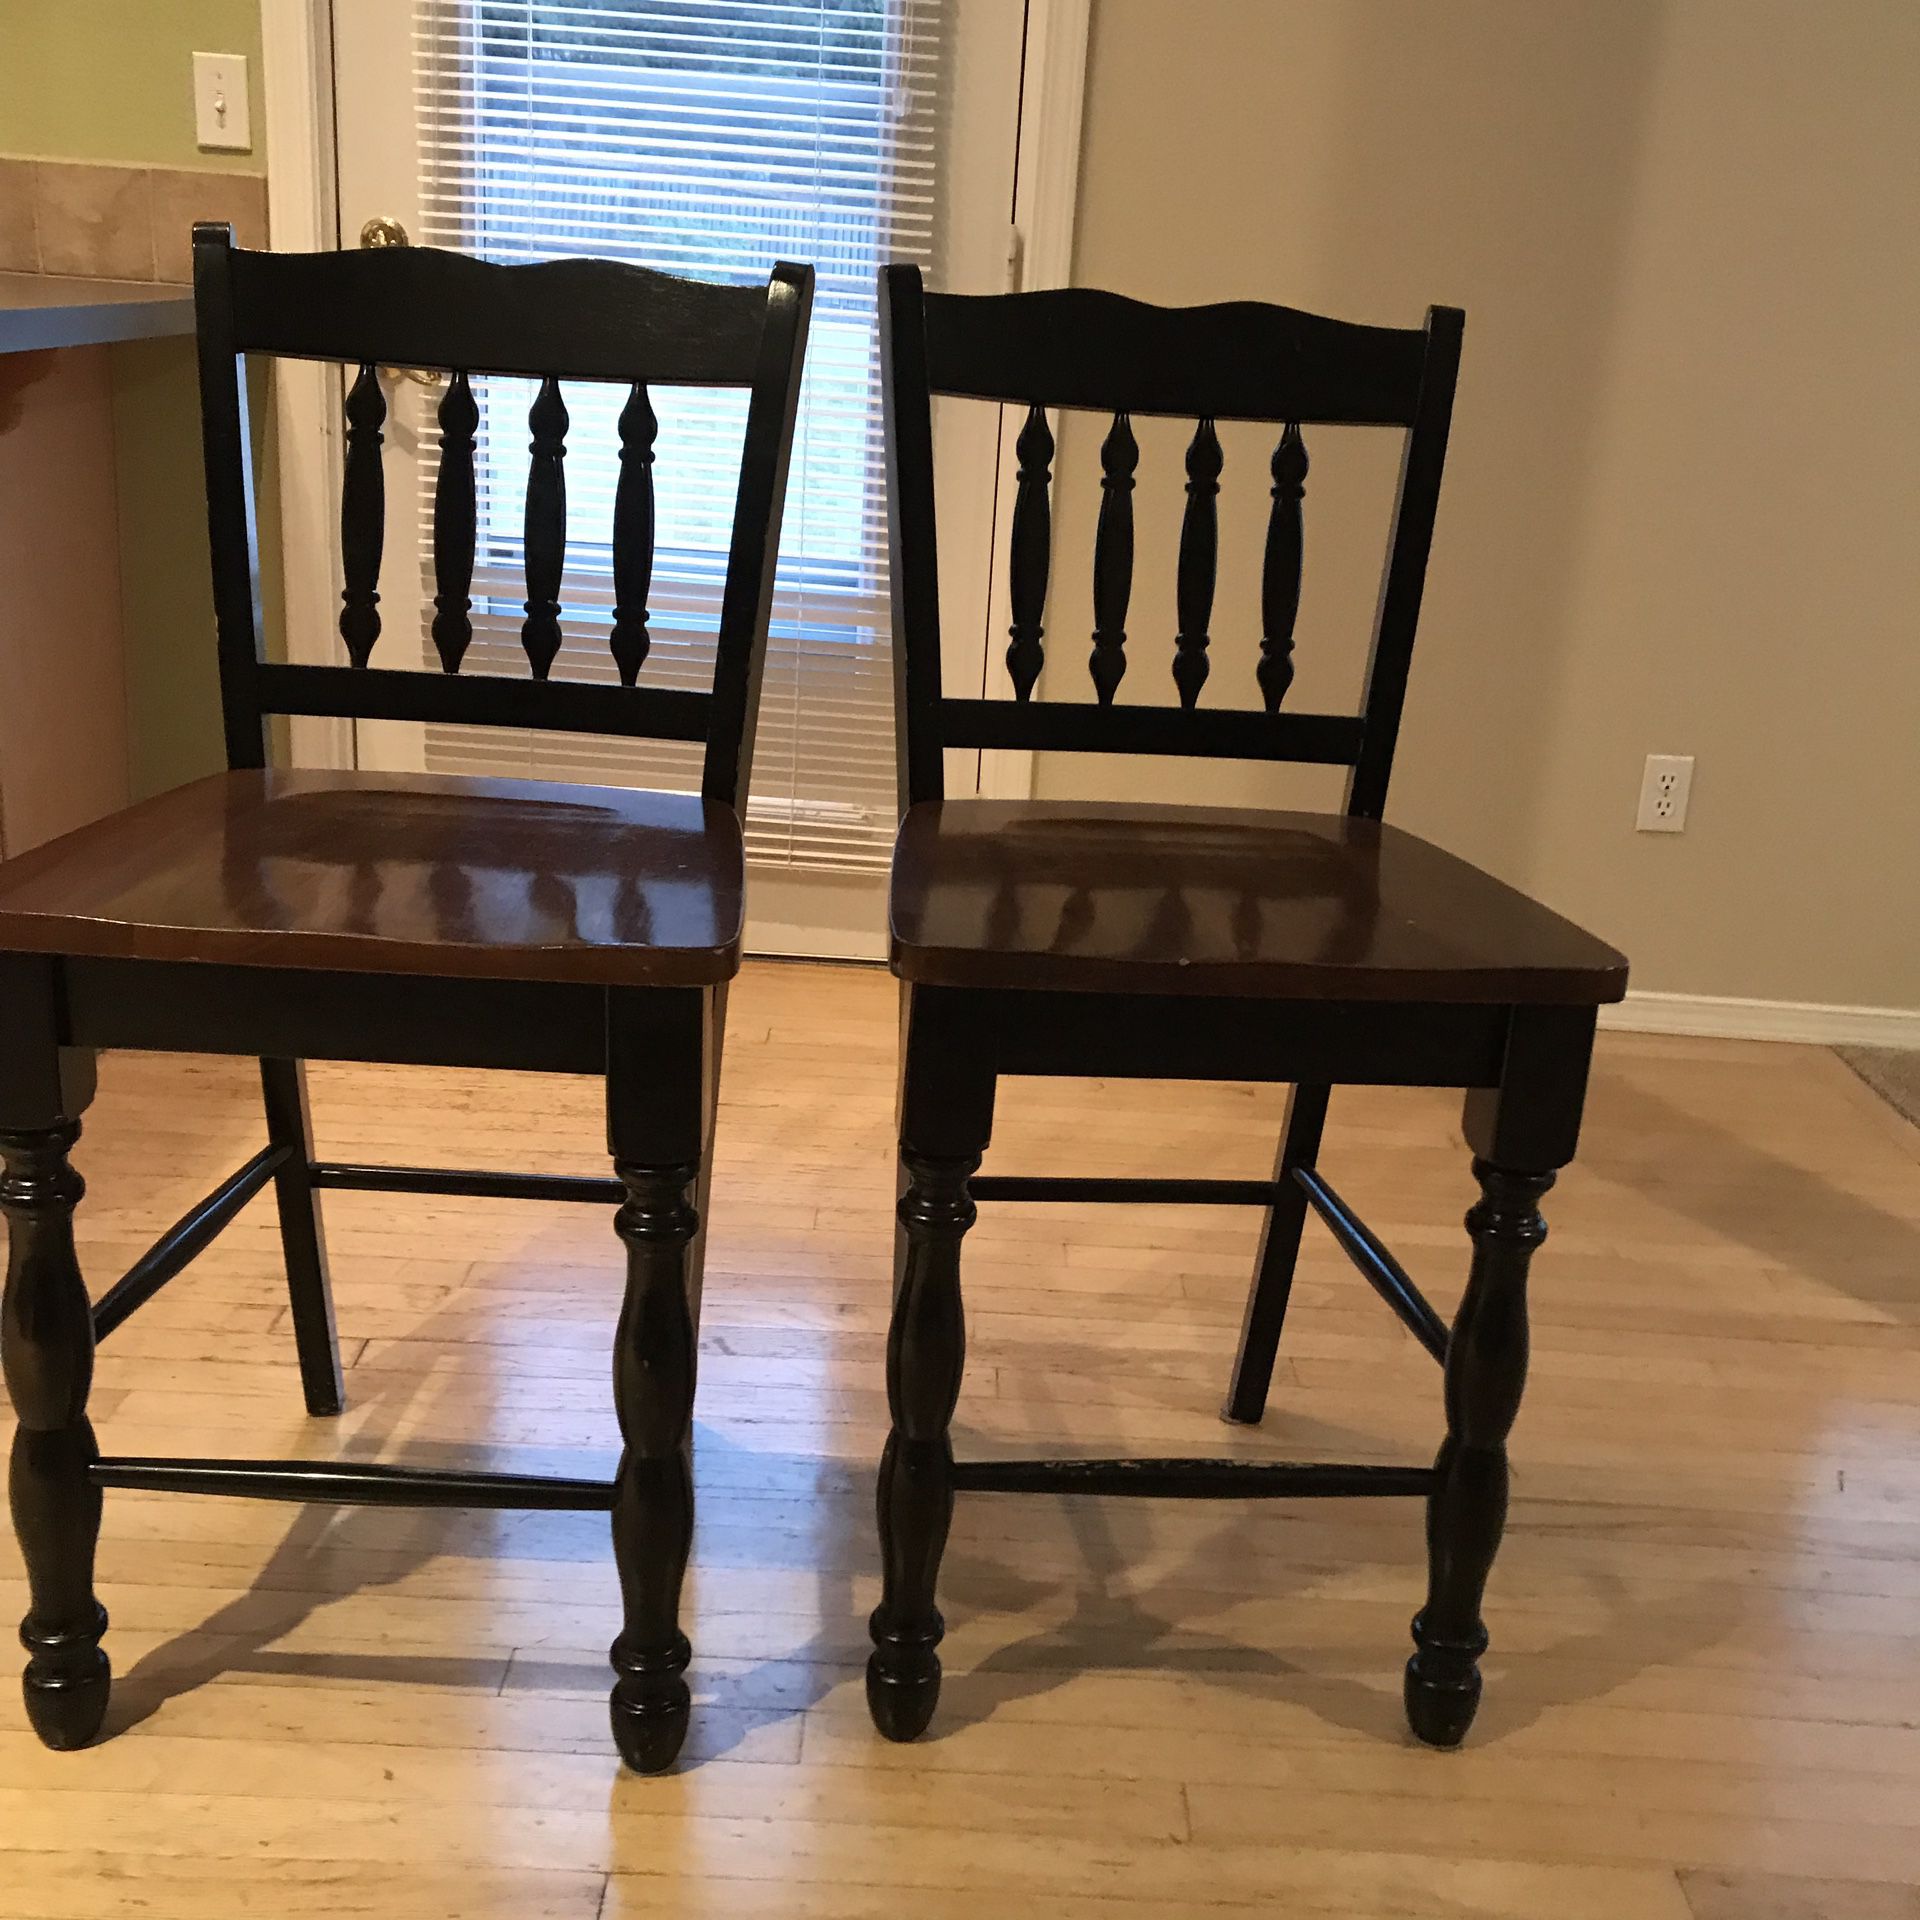 2 Ashely bar stools